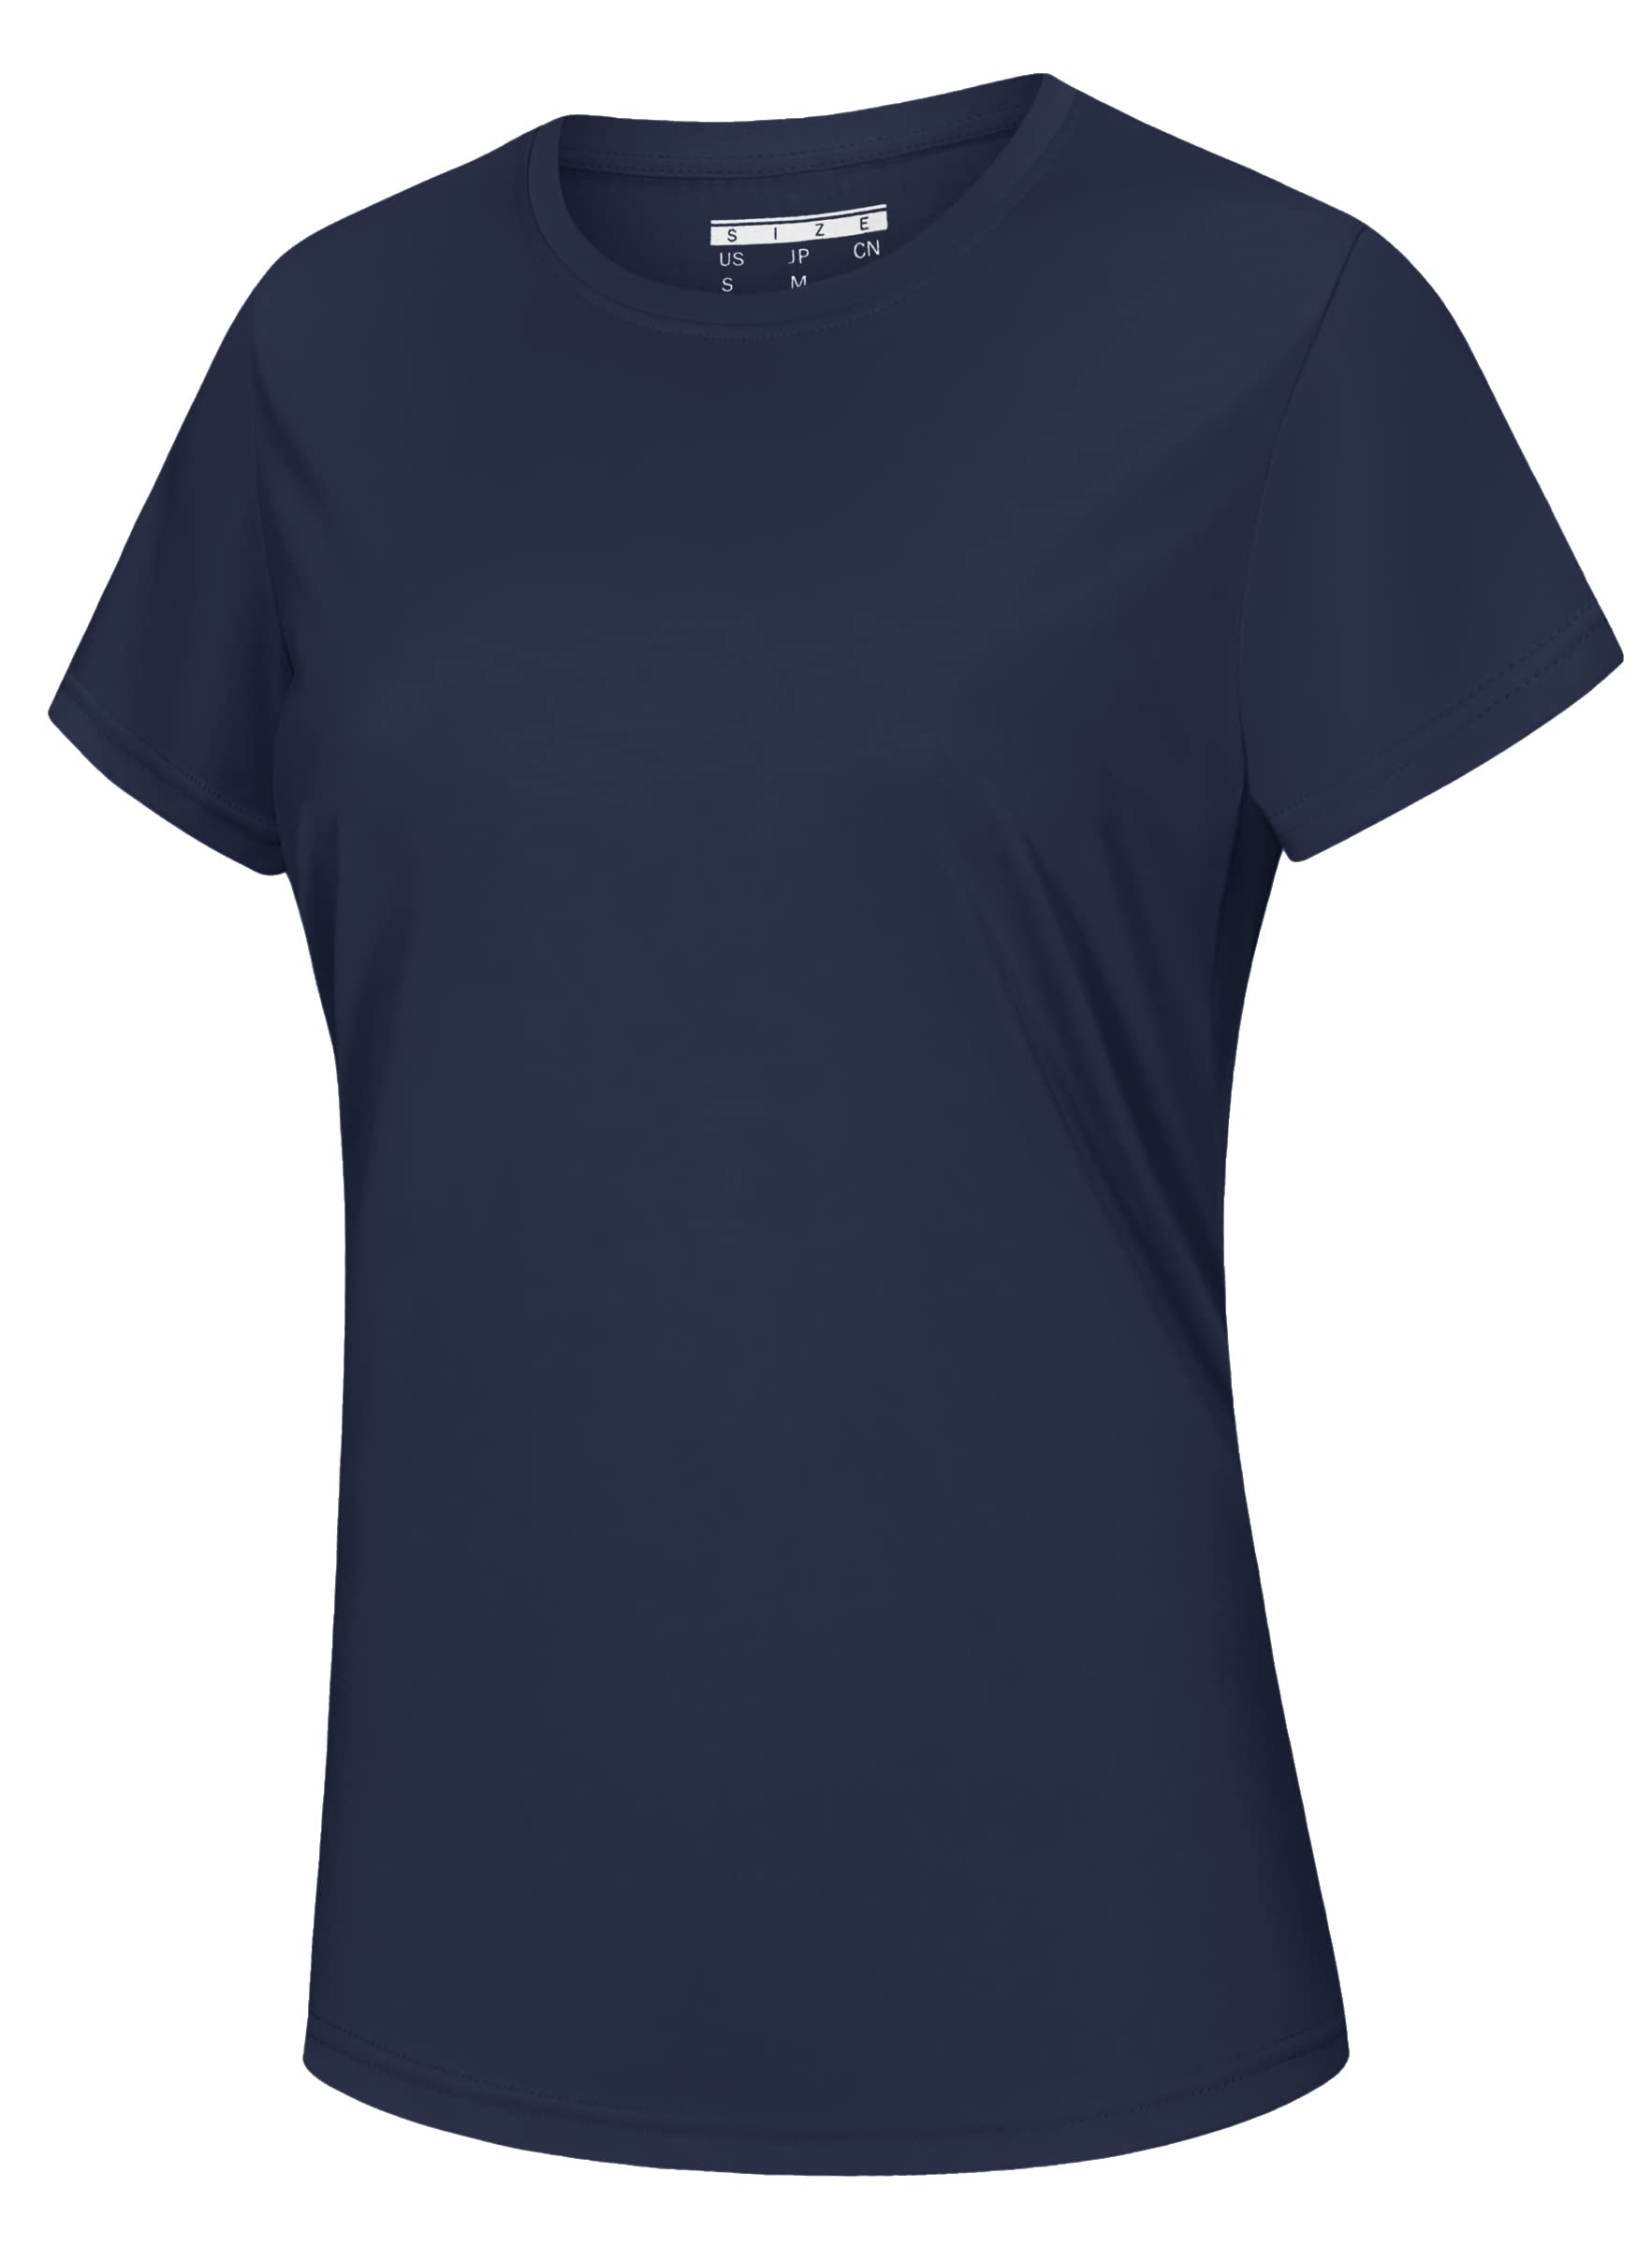 [KEFITEVD] アクティブシャツ レディース 大きいサイズ ジムウェア 半袖 吸汗 トップス ストレッチ uvカット ヨガウェア tシャツ 通気